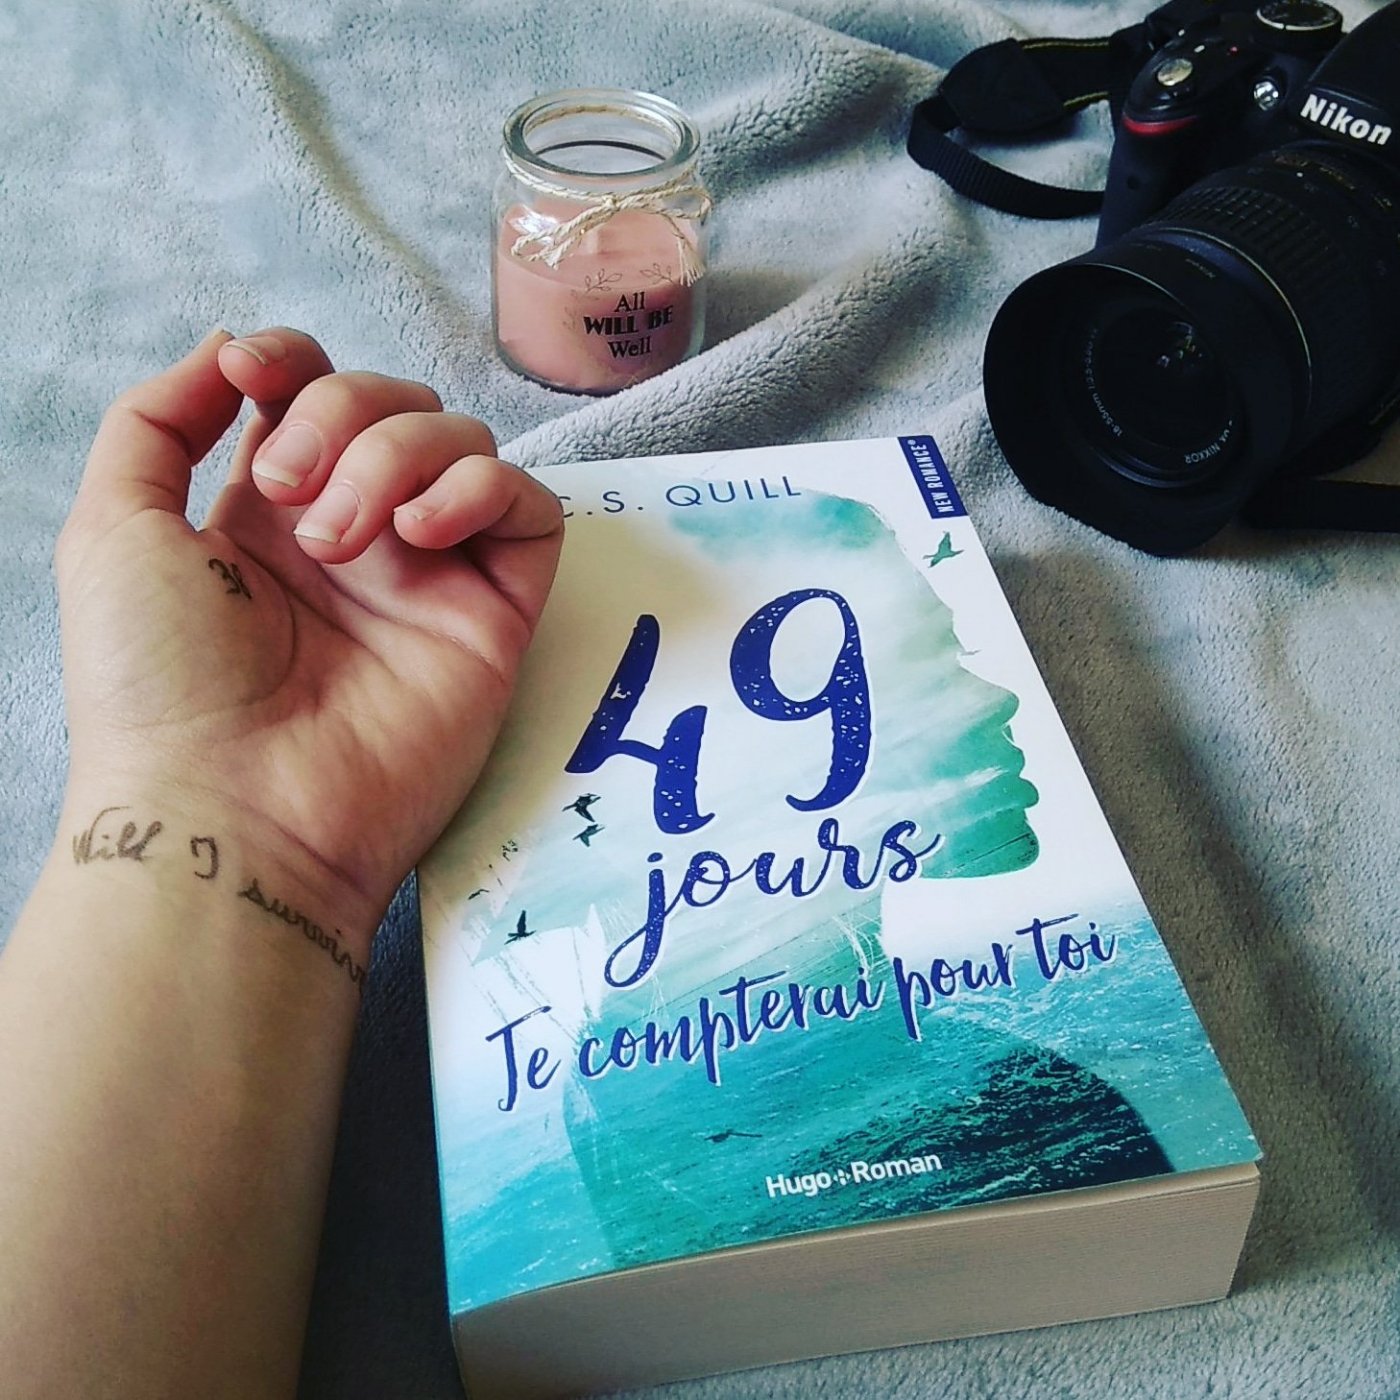 Chronique] « 49 jours Je compterai pour toi » de C. S. Quill